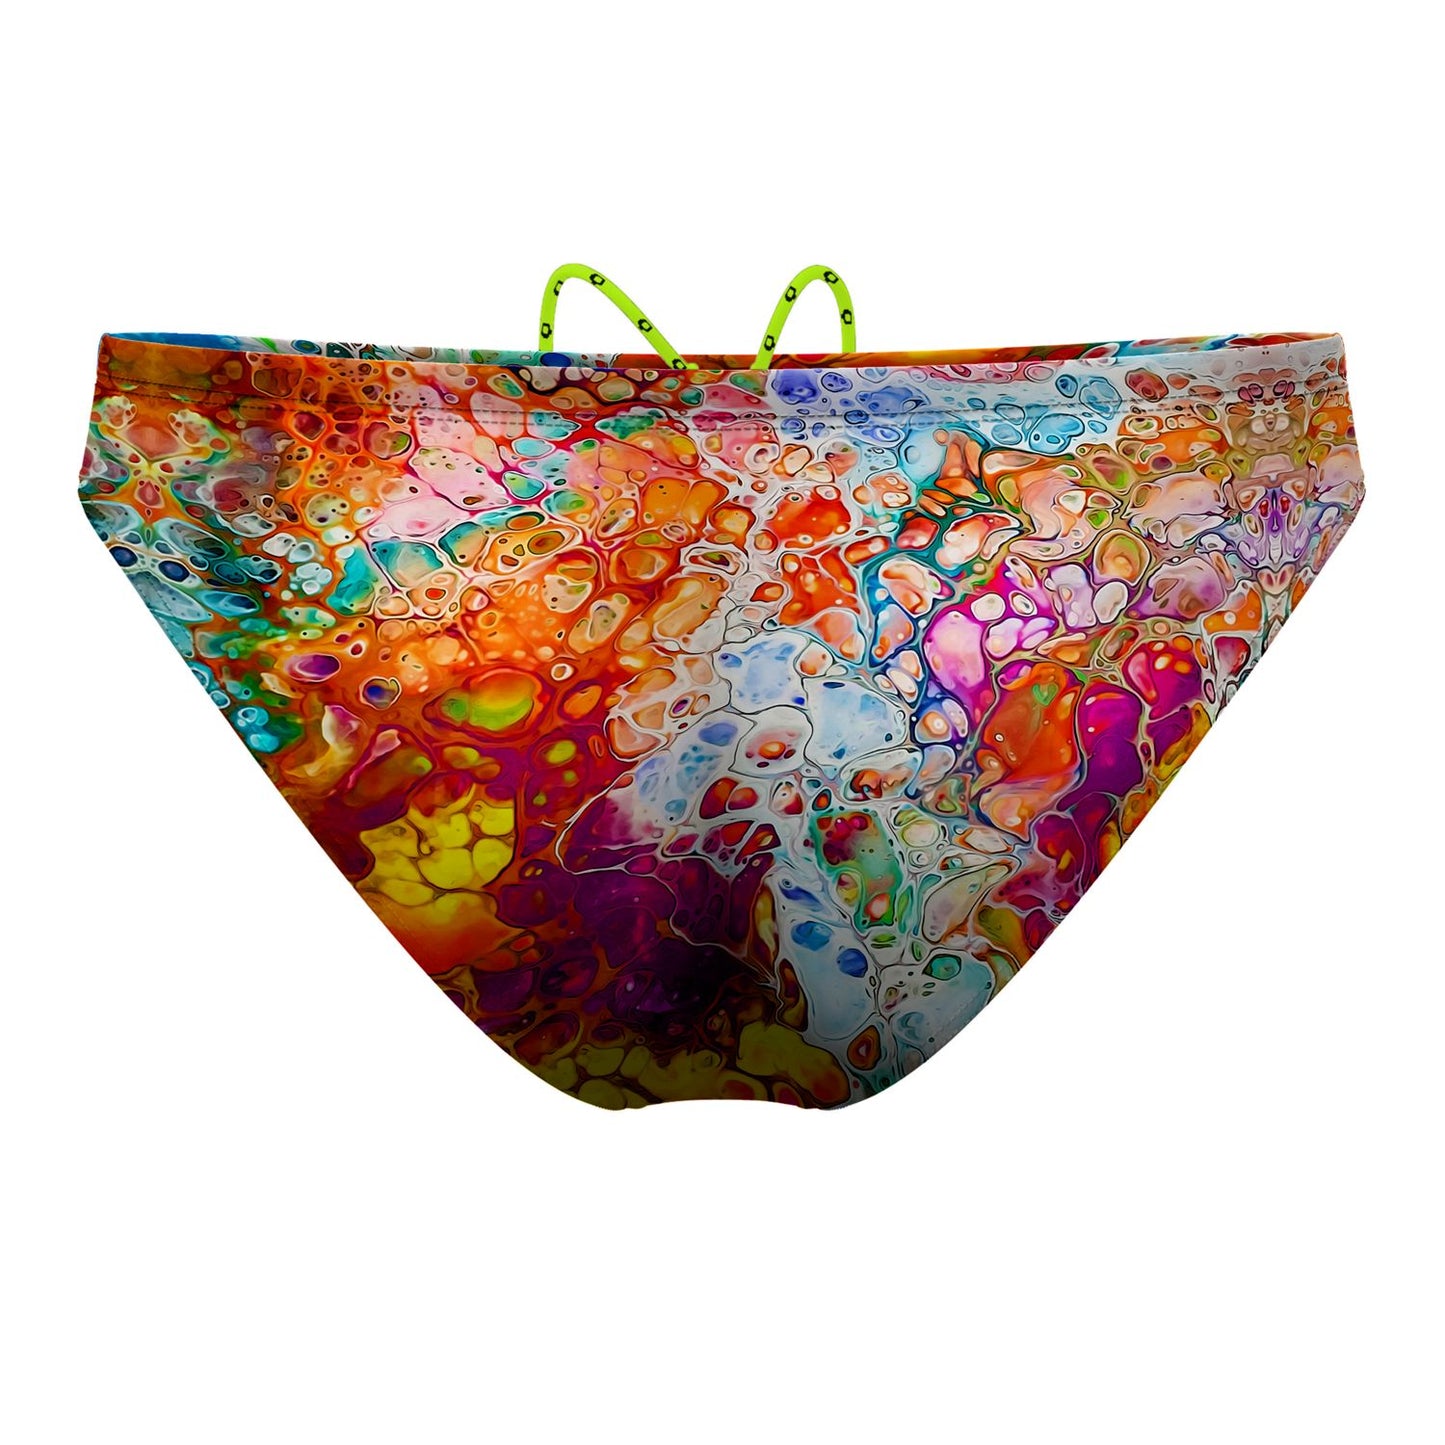 Colors of the Sea Waterpolo Brief Swimwear